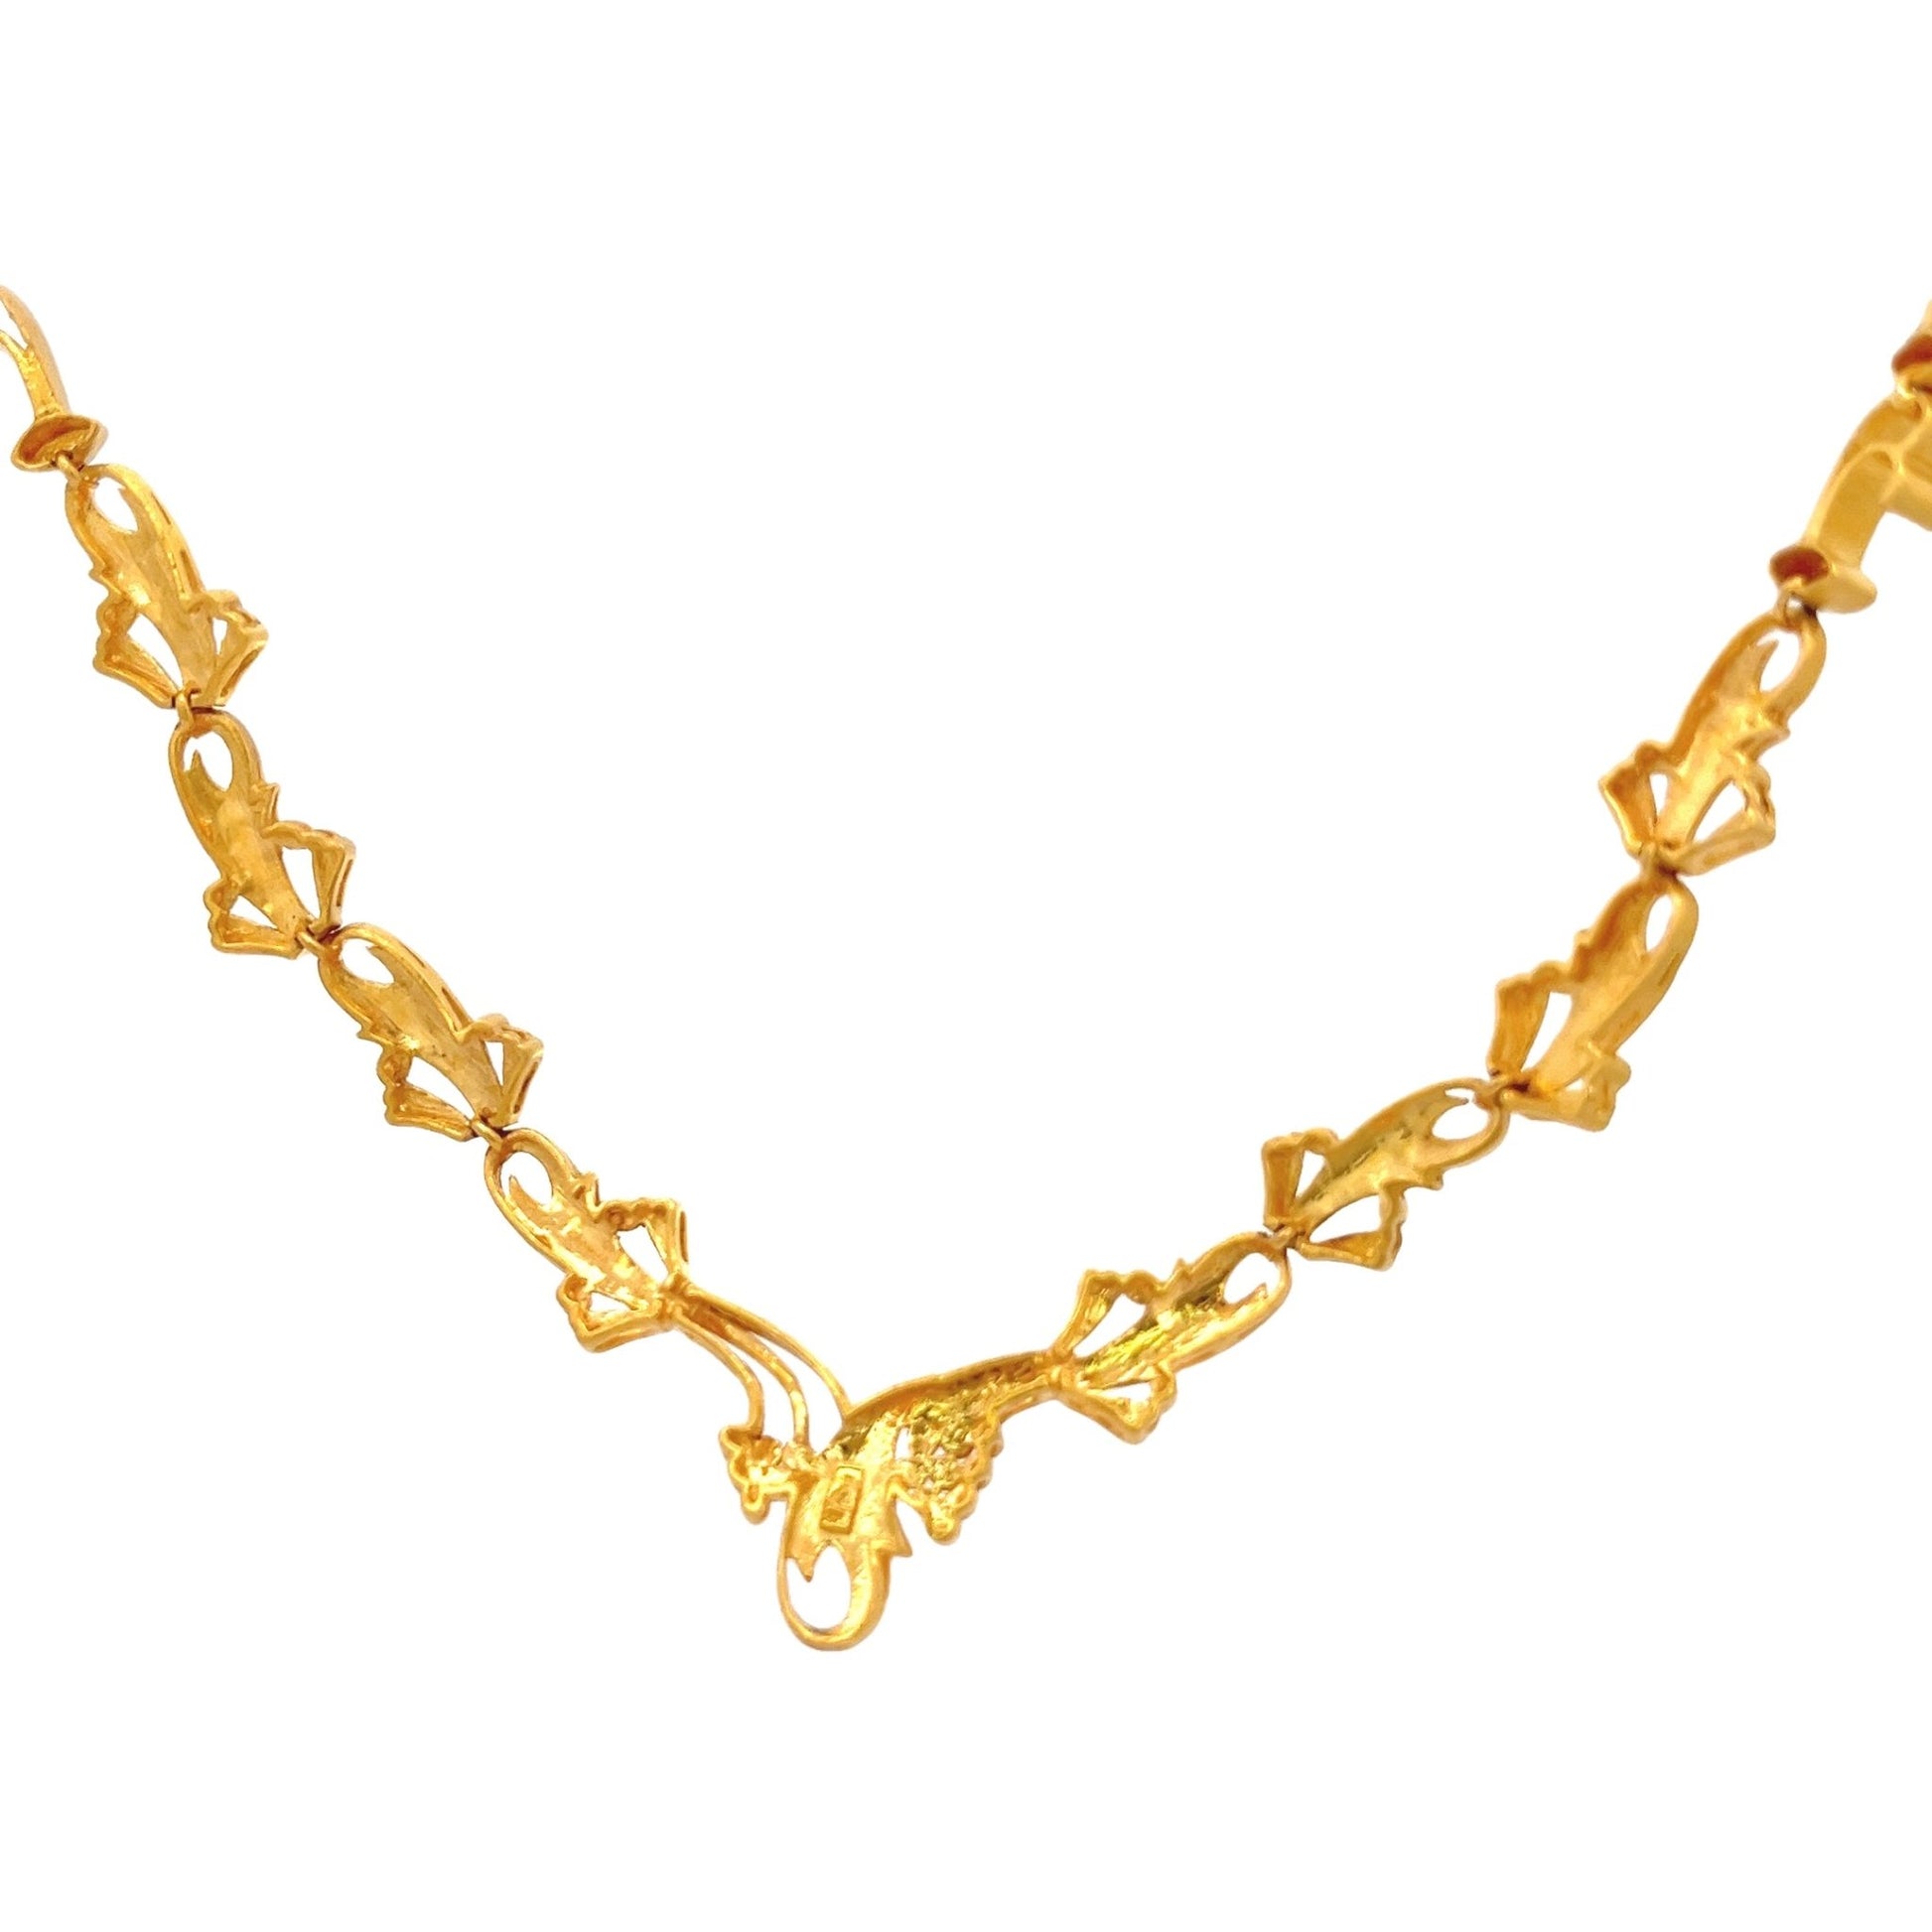 22ct elegant golden necklace 07001331NecklaceRetroGold